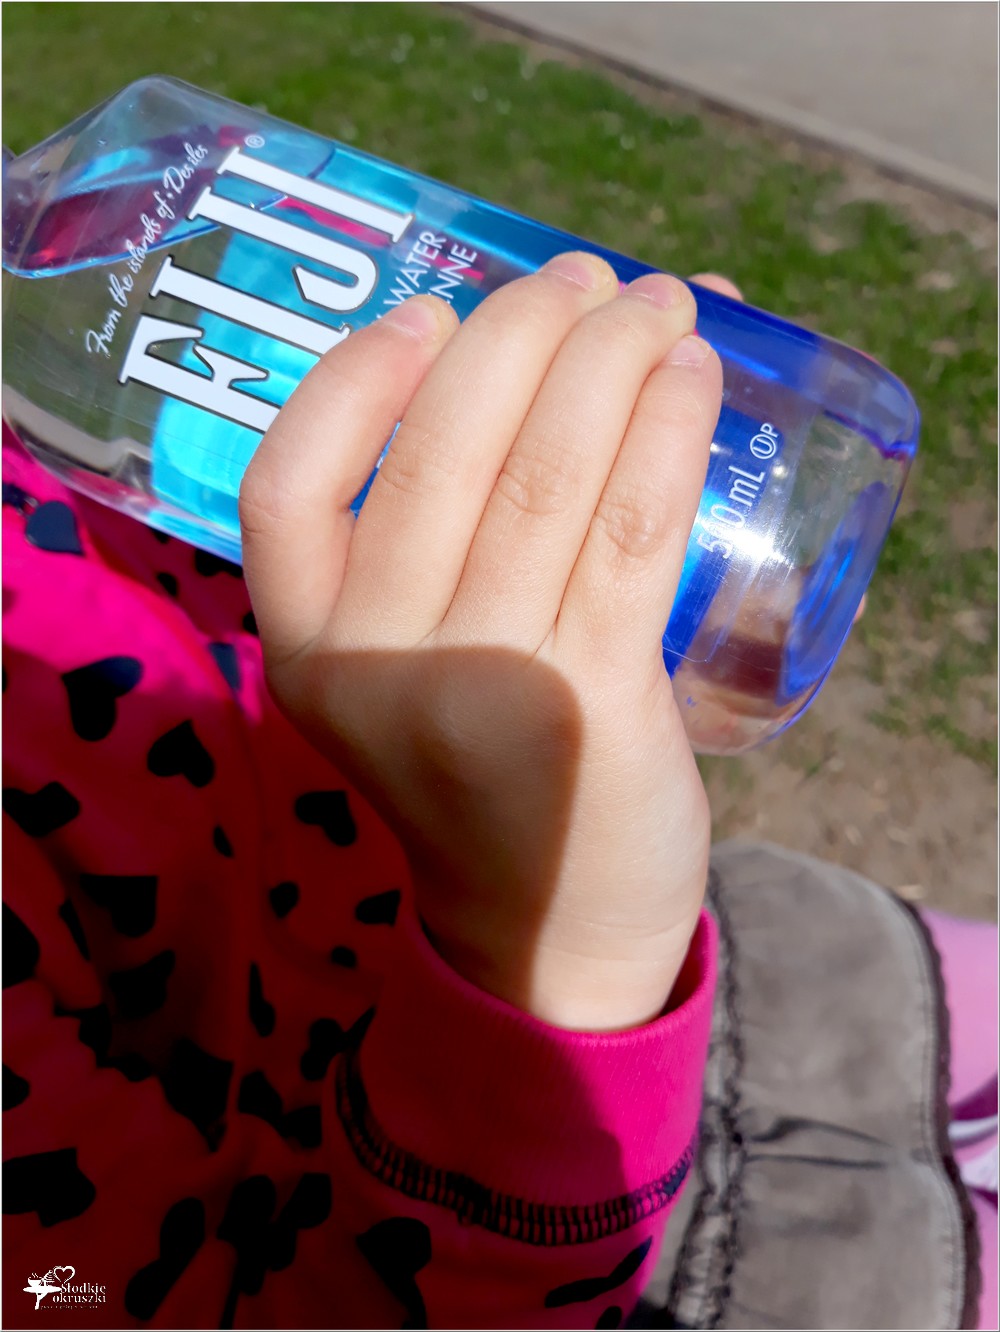 Woda fiji, to wyjątkowa woda którą pokochały moje dzieci piją ją każdego dnia